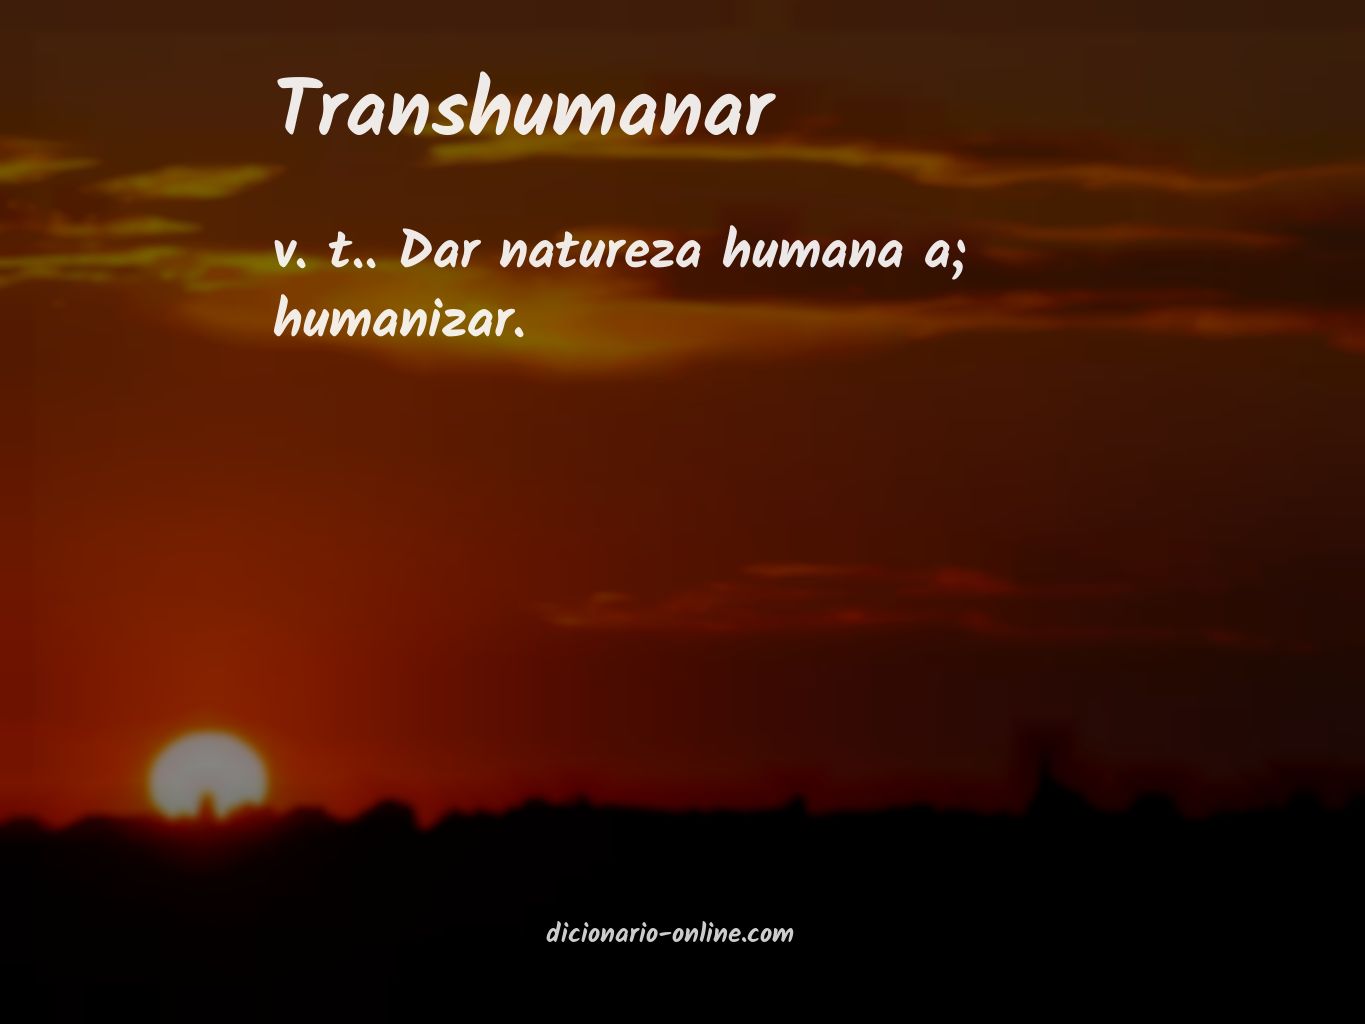 Significado de transhumanar